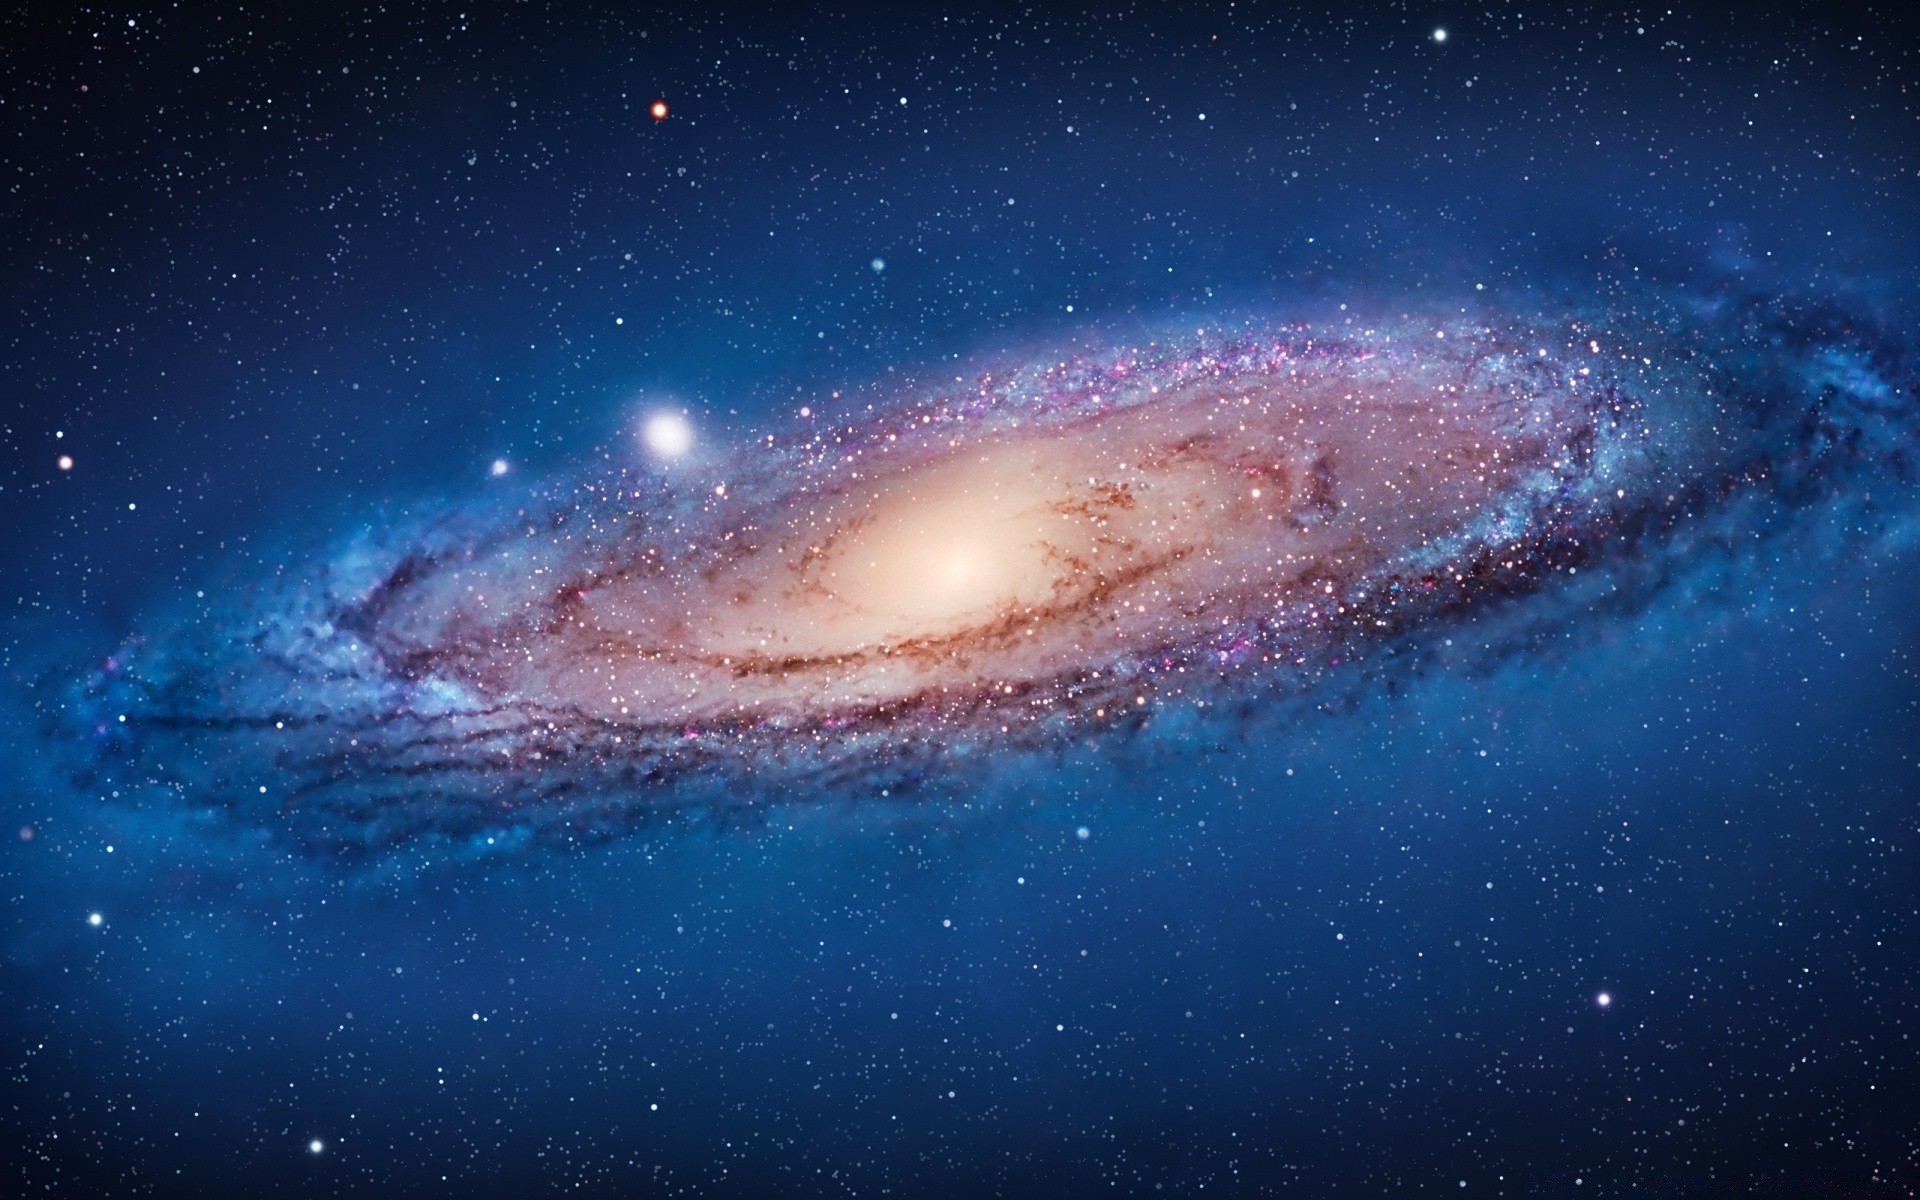 туманности астрономия галактика луна разведка пространство планеты глубокий бесконечность созвездие небо наука солнце астрология телескоп стеллар тайна пыль внешний